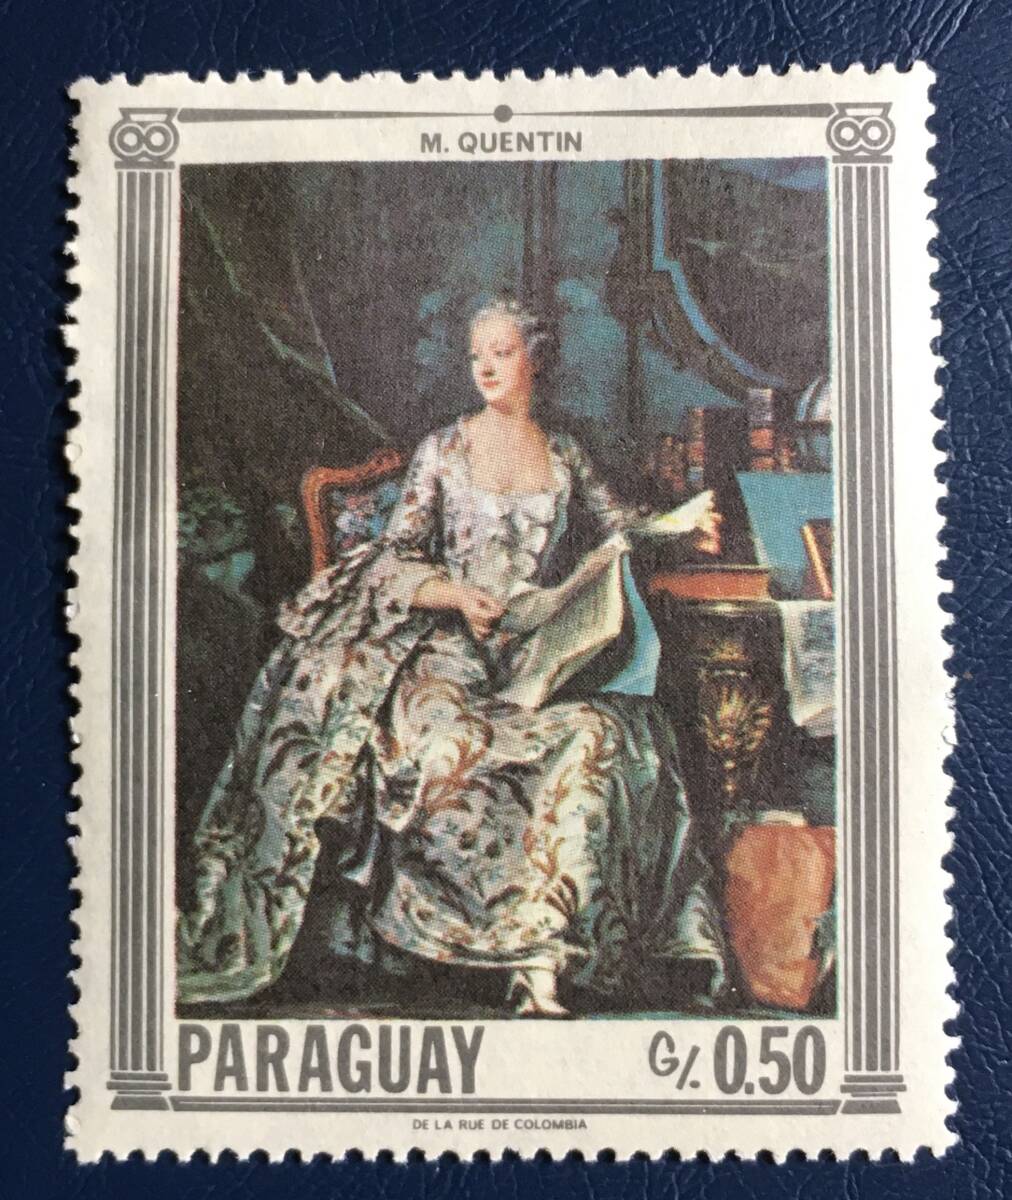 【絵画切手】パラグアイ 1967年 「ポンパドゥール侯爵夫人」M. クエンティン画 1種 未使用_画像1